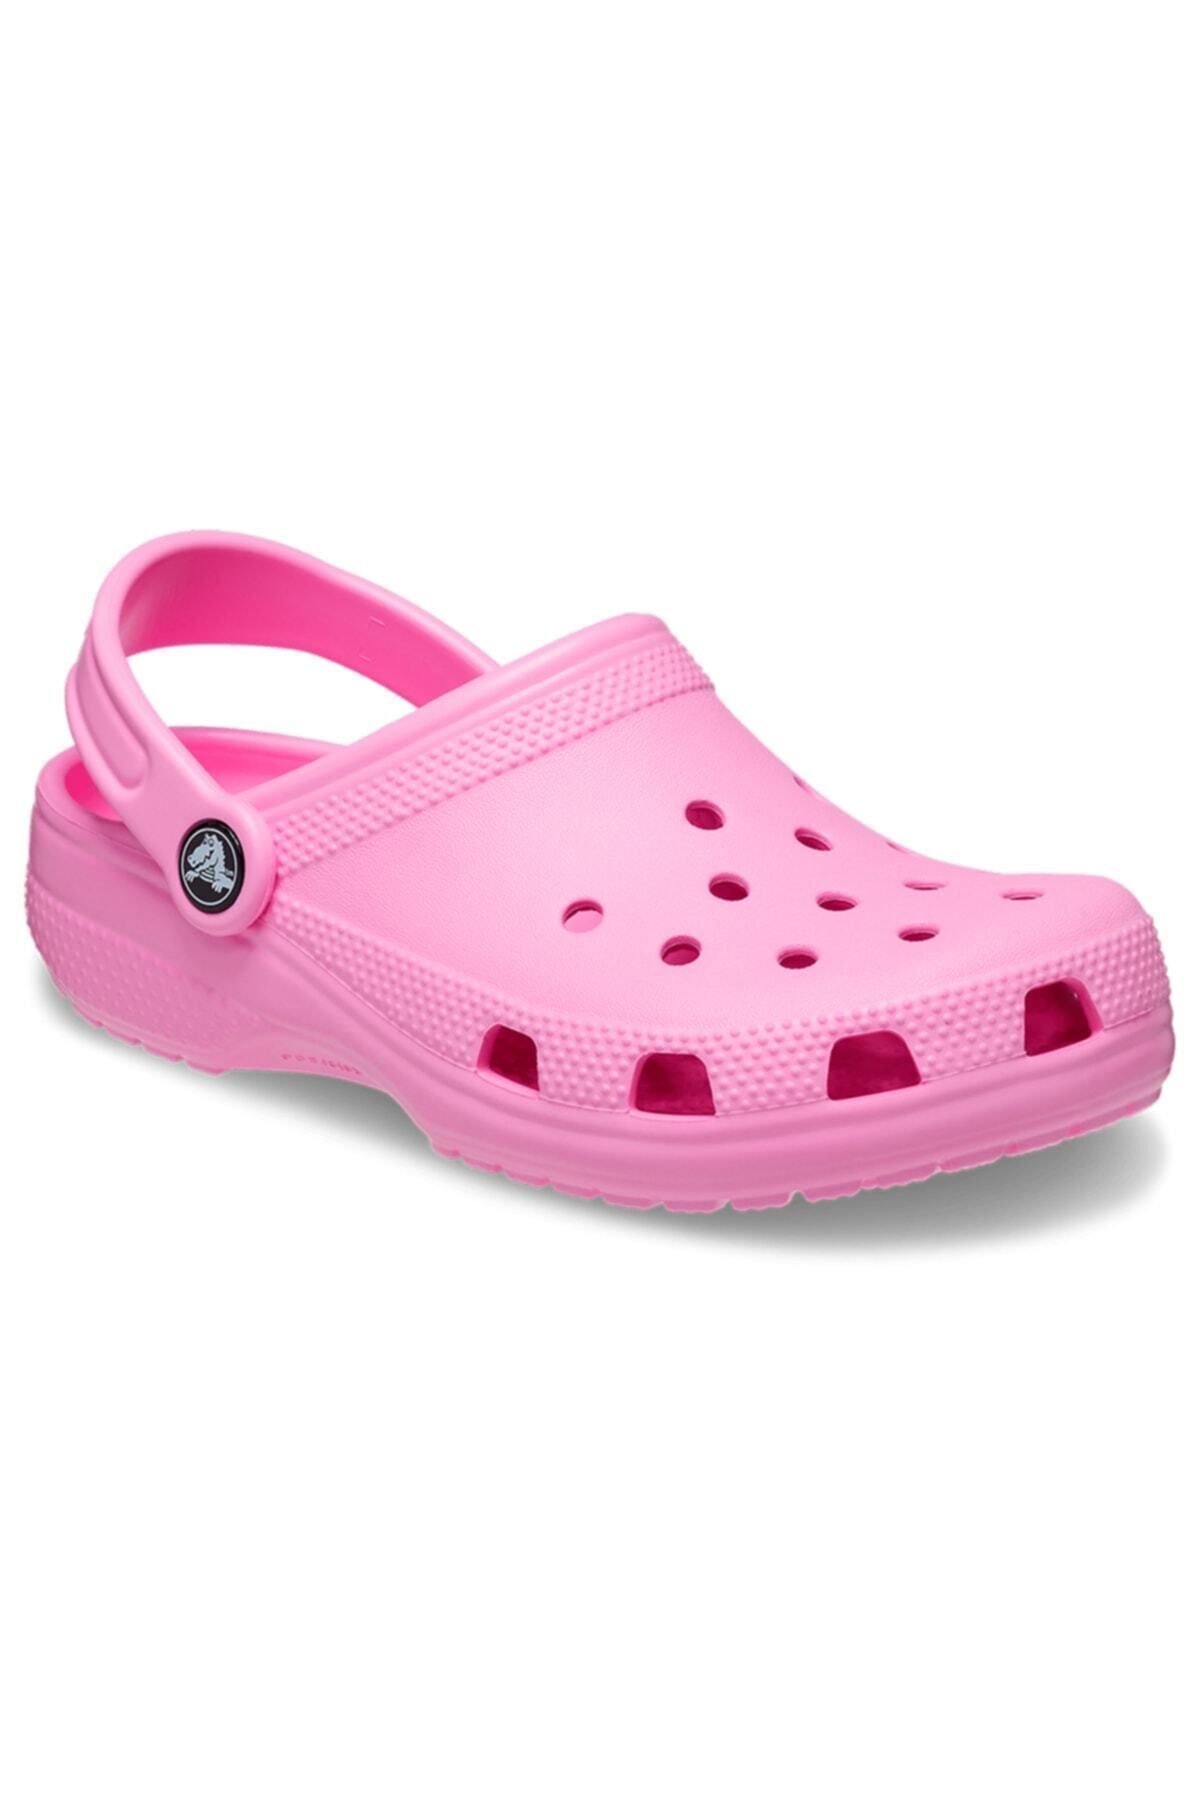 Crocs 206991-6sw Classıc Clog Çocuk Terlik Sandalet